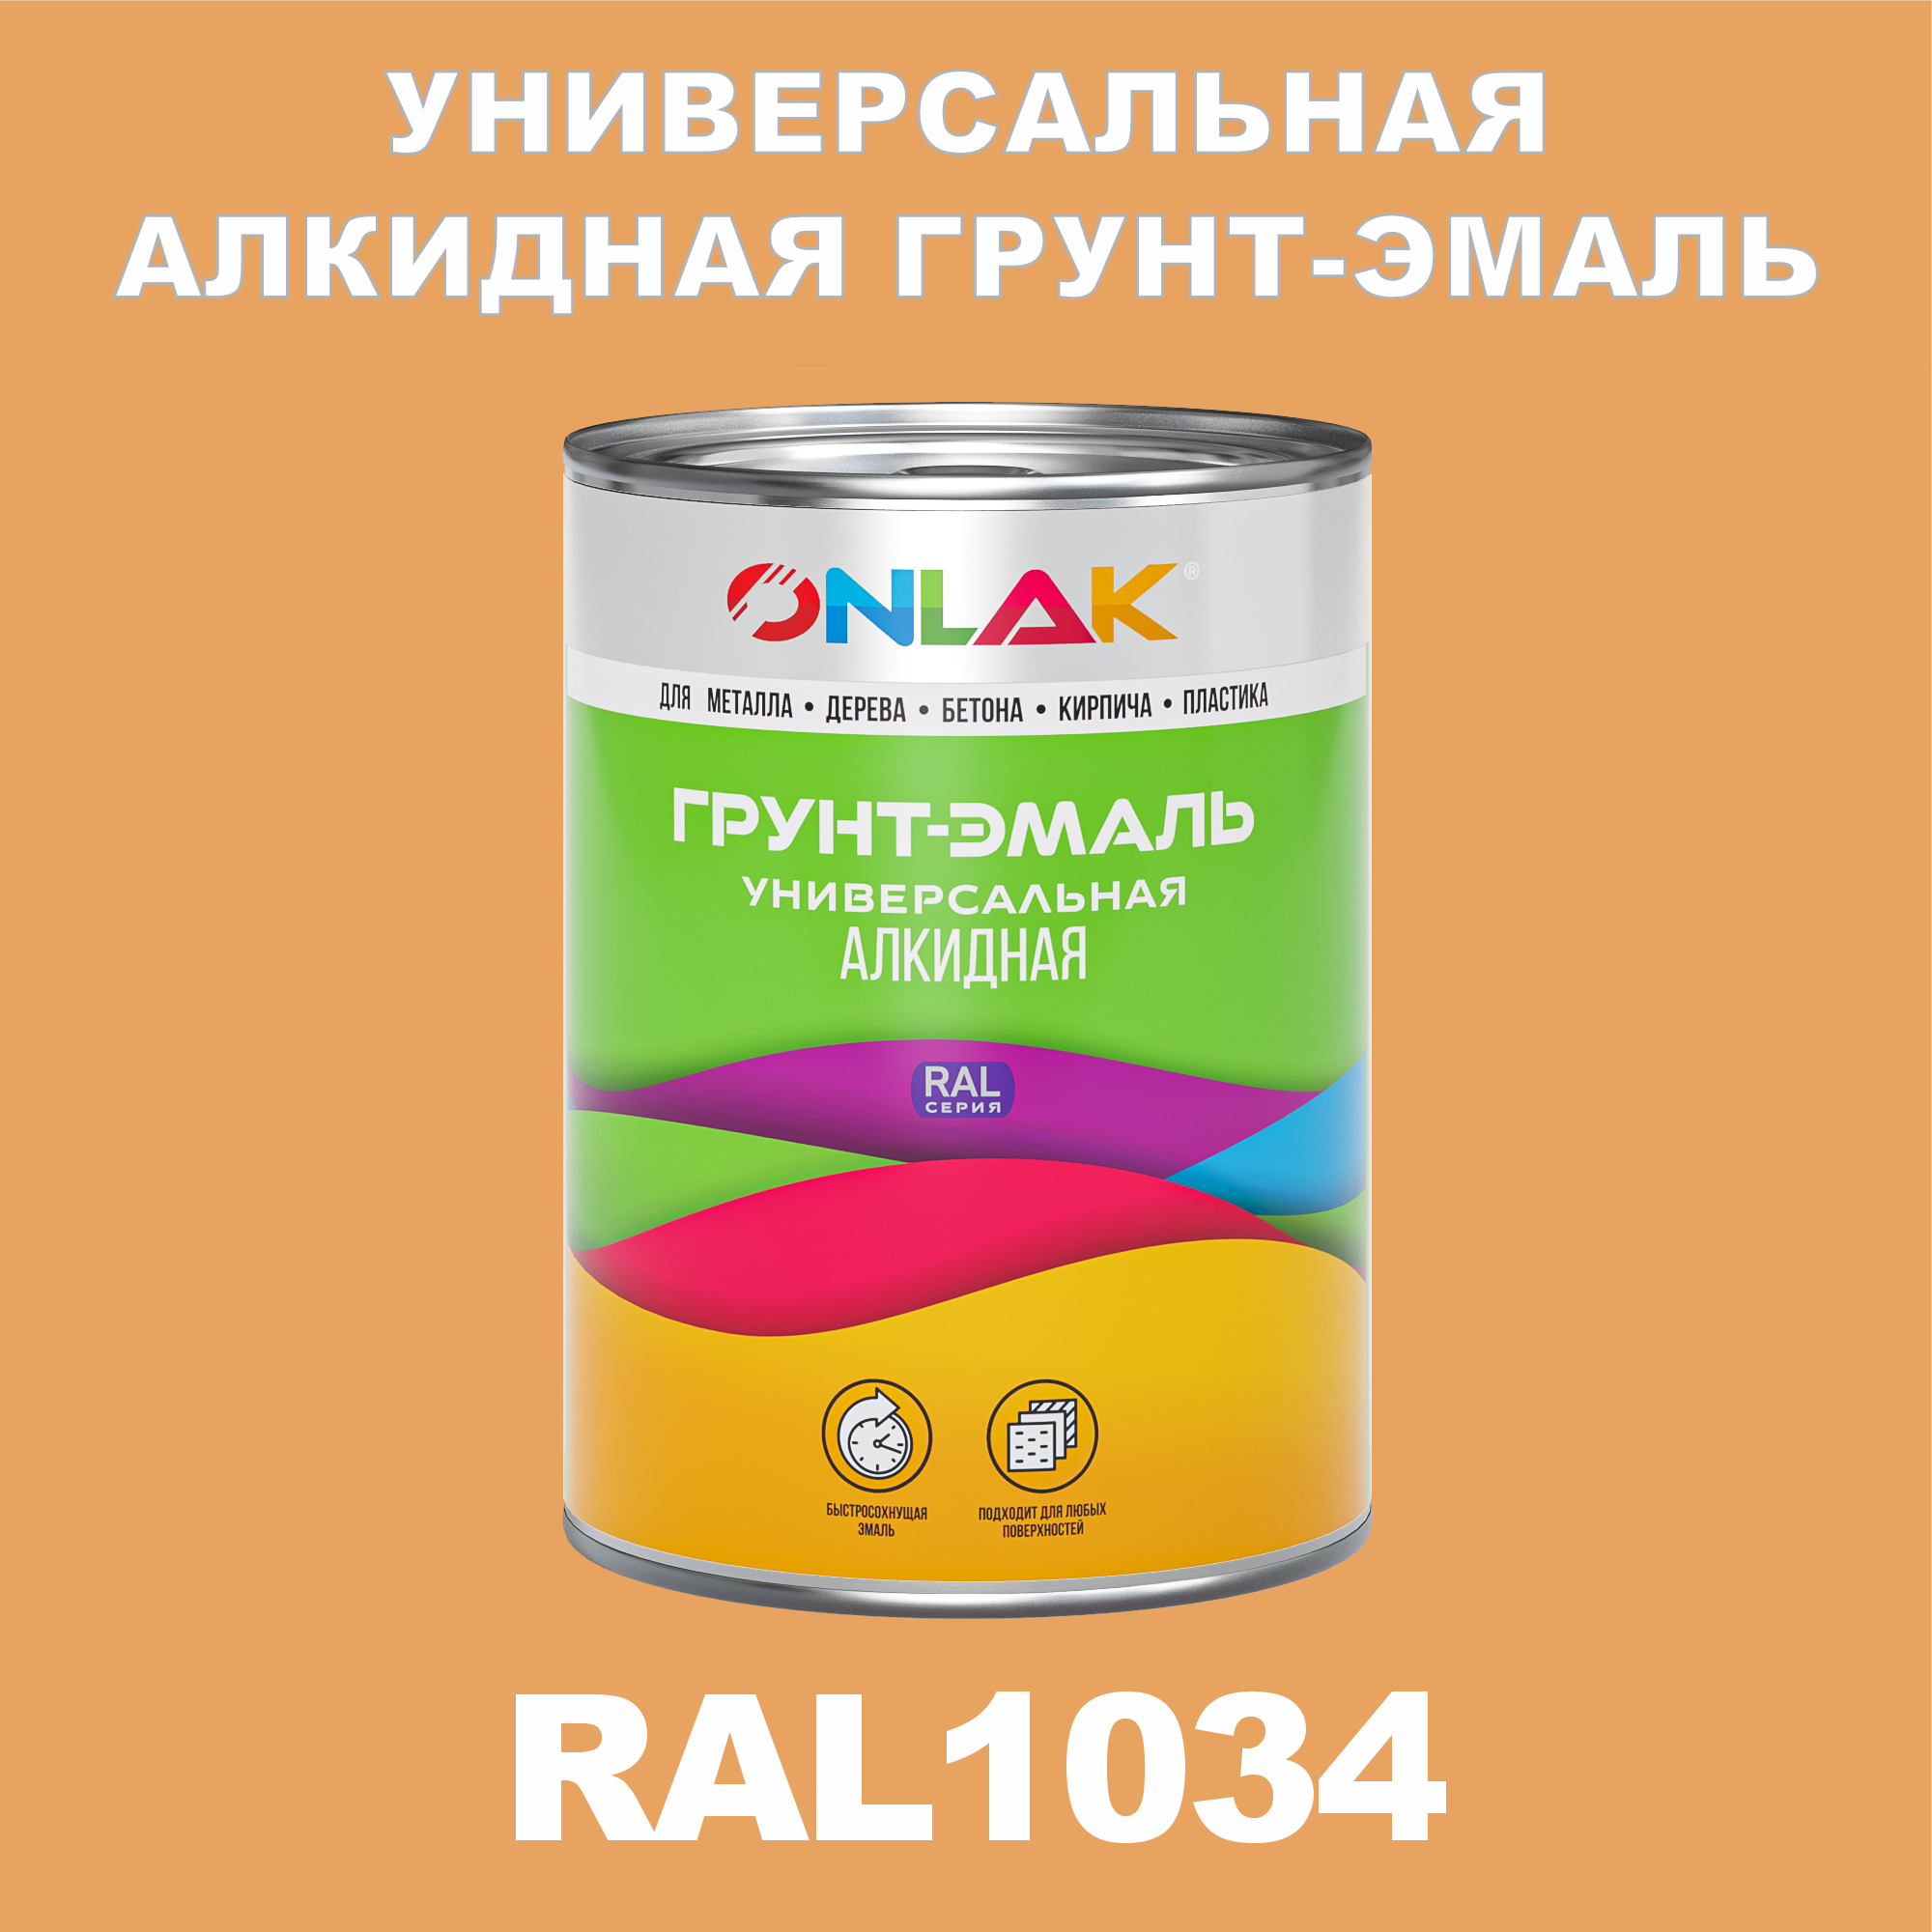 Грунт-эмаль ONLAK 1К RAL1034 антикоррозионная алкидная по металлу по ржавчине 1 кг грунт эмаль престиж по ржавчине алкидная зеленая 1 9 кг